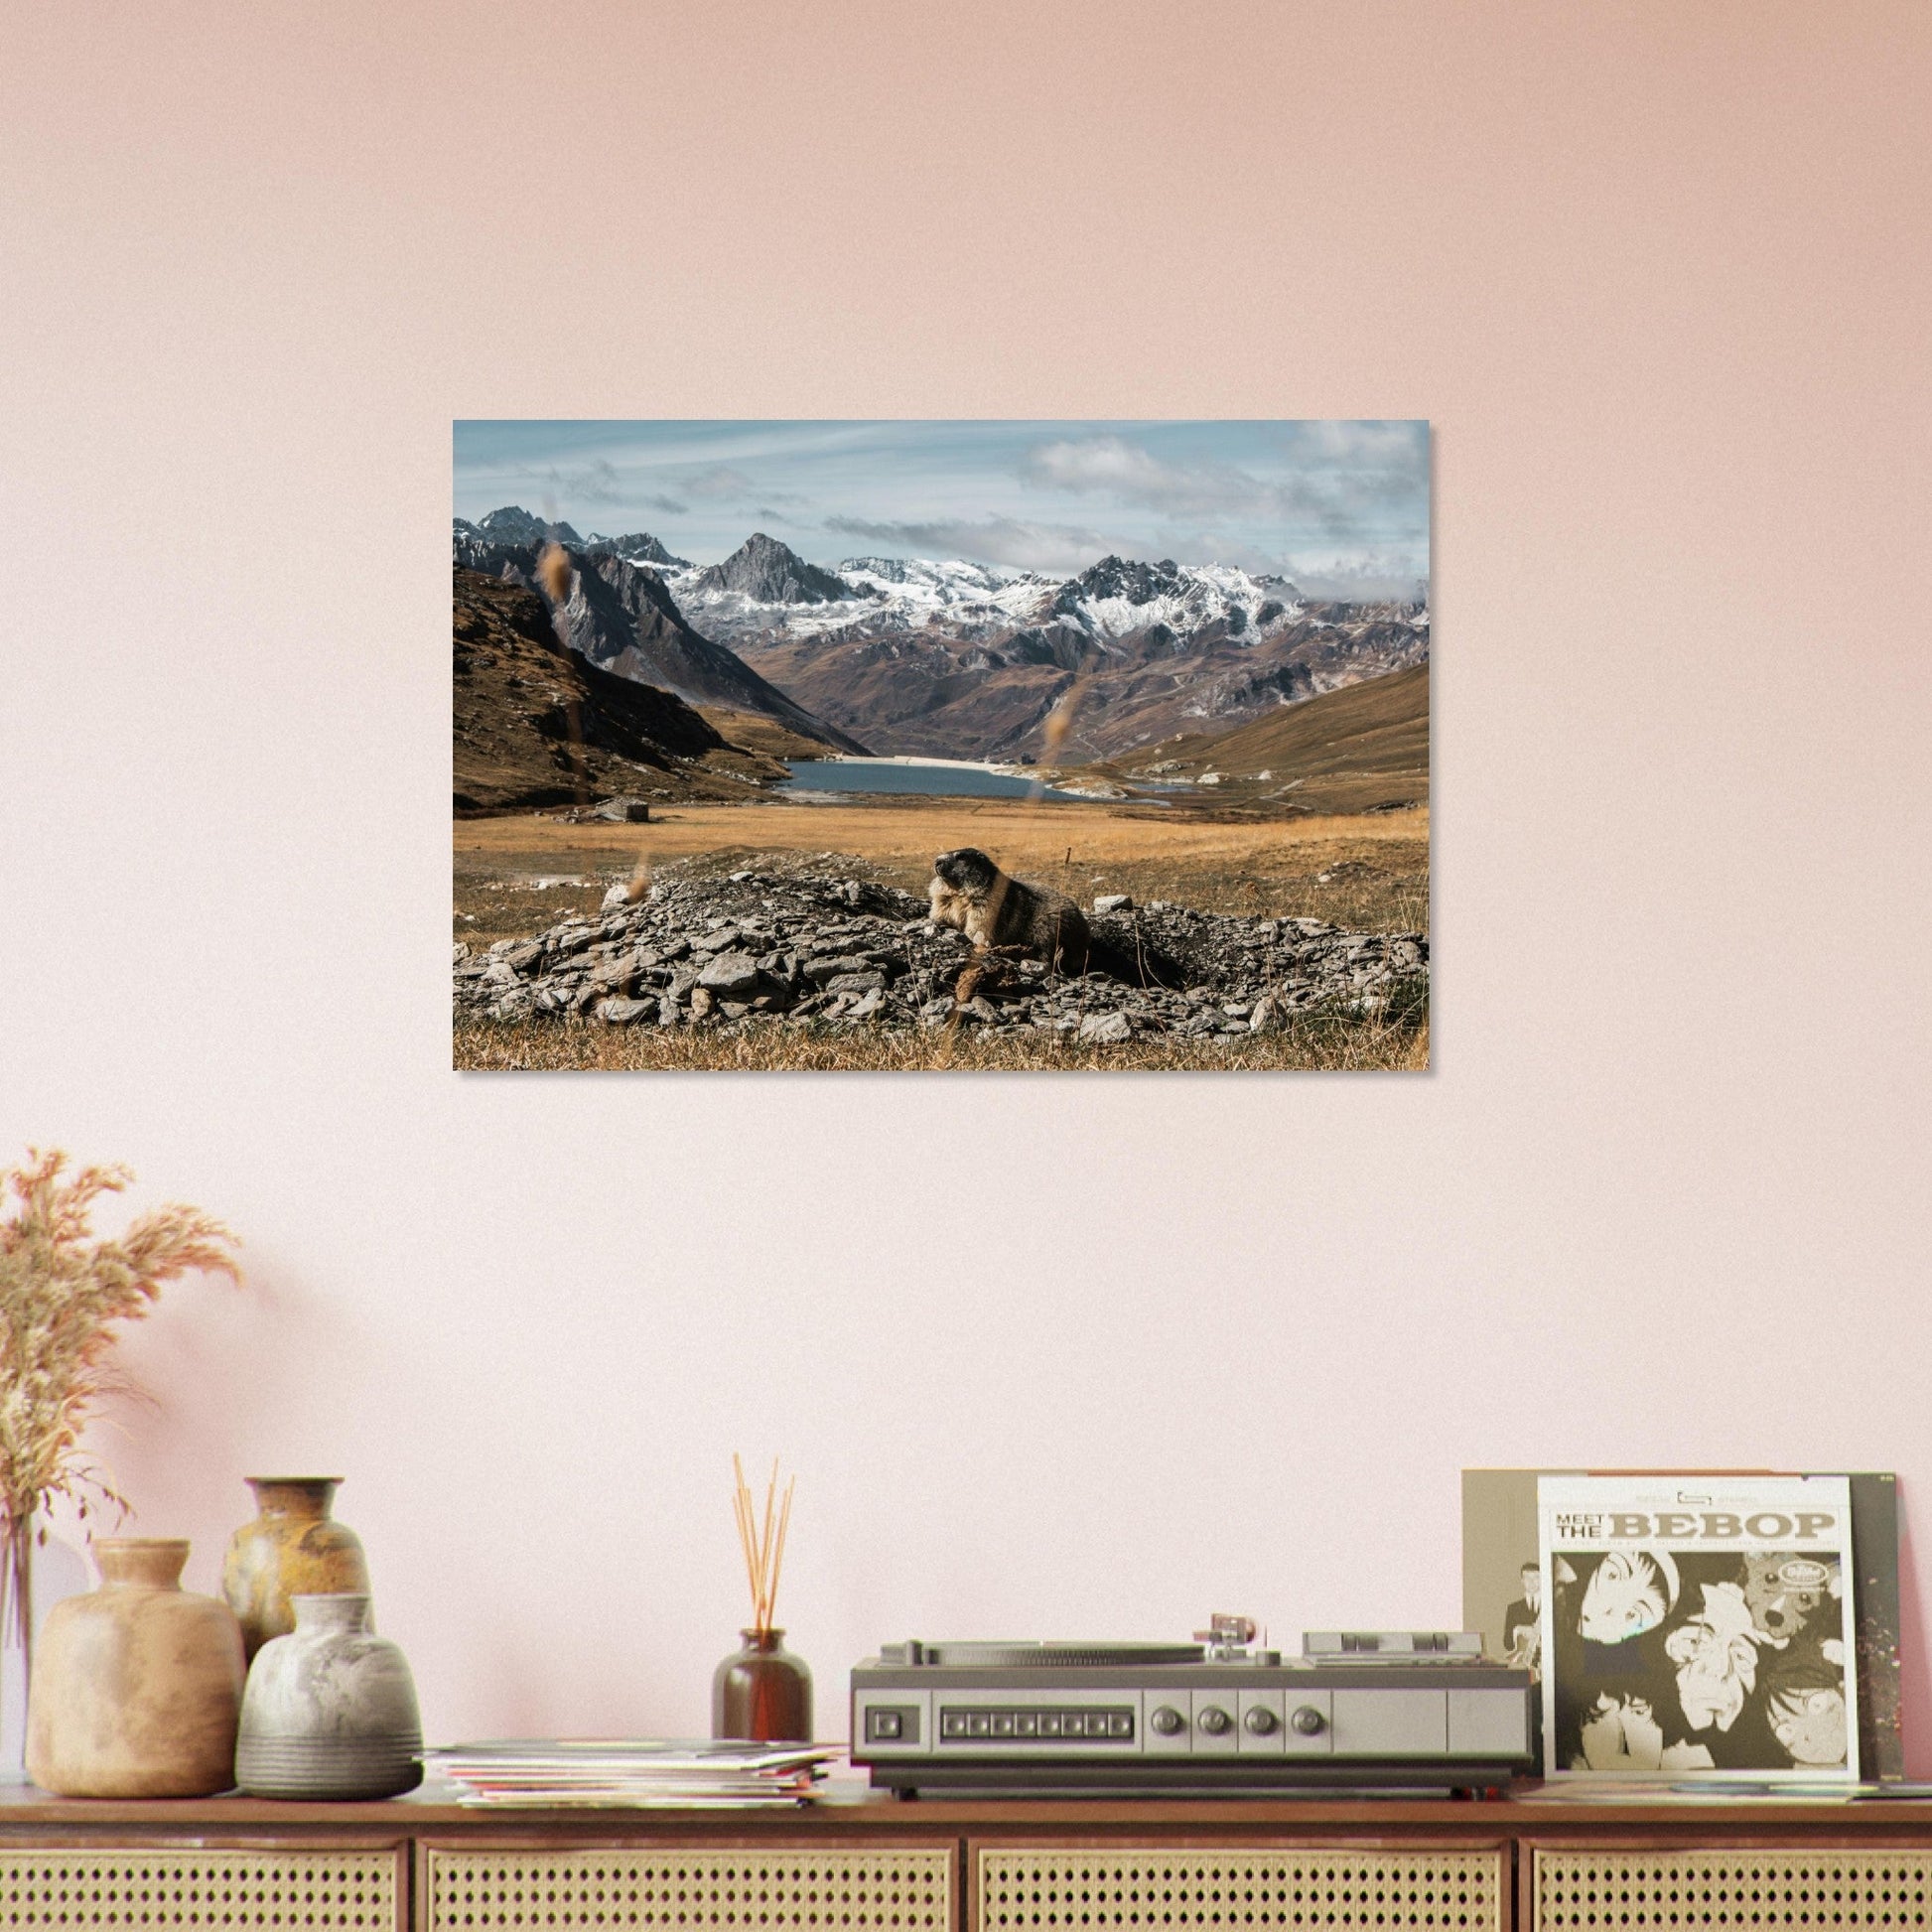 Vente Photo d'une marmotte en automne à Val d'Isère - Tableau photo paysage